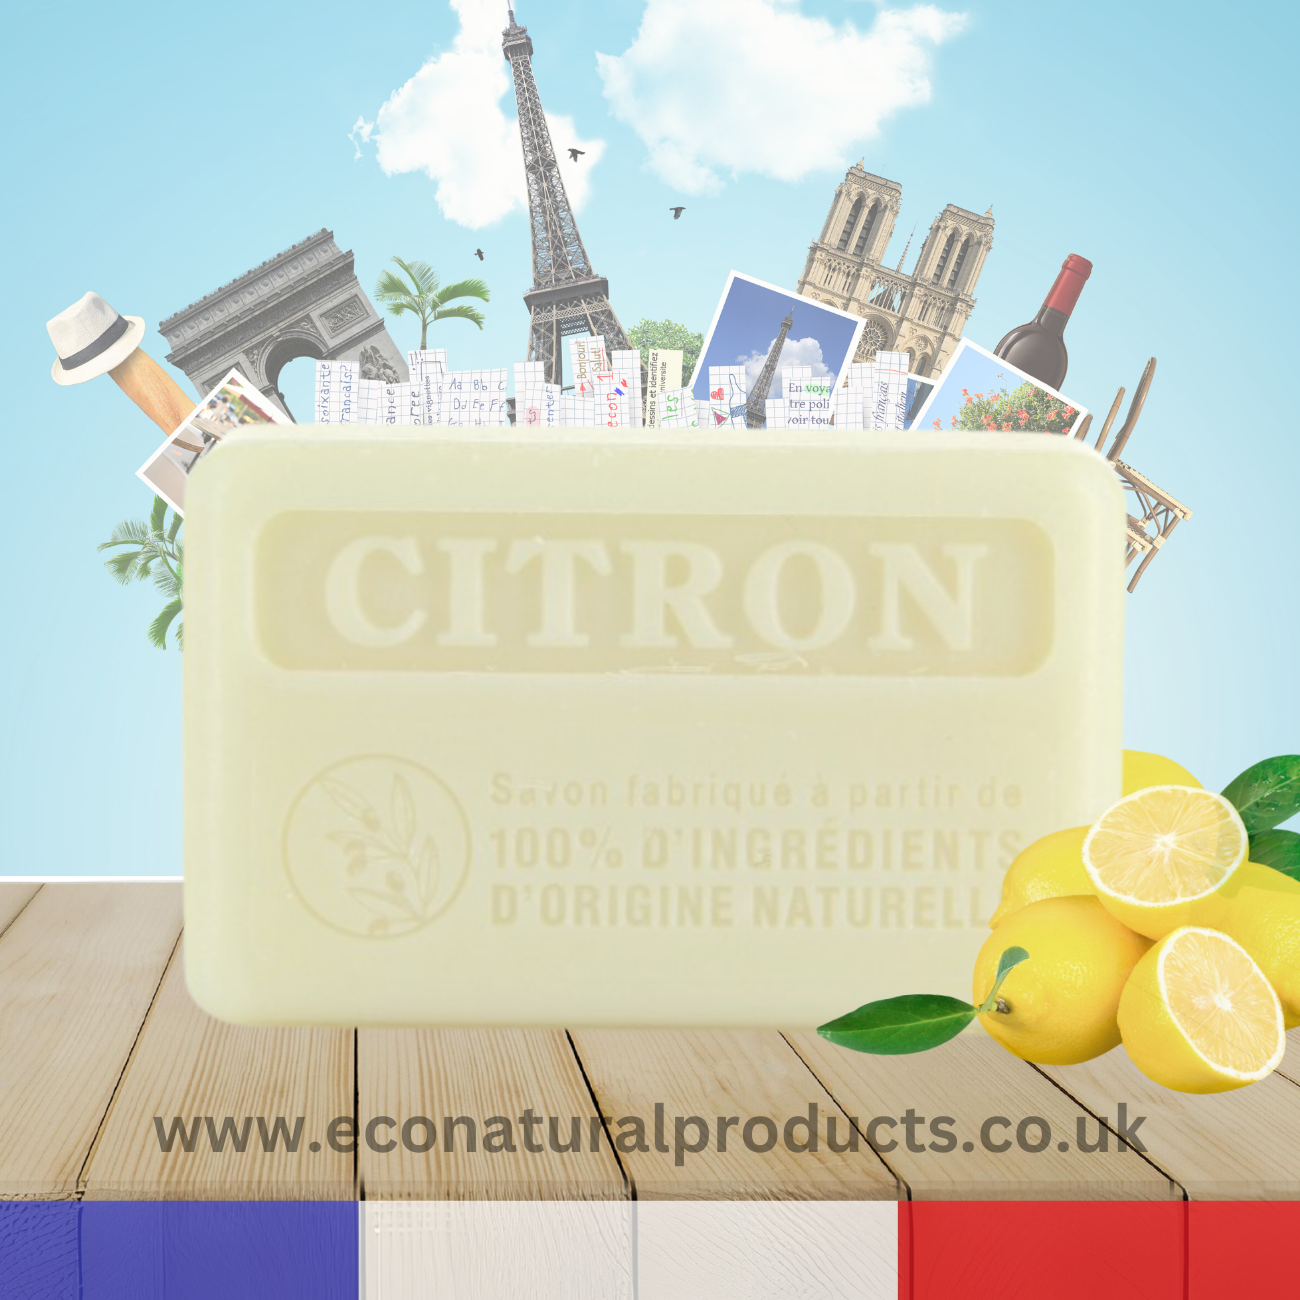 Marseille Soap 100% Natural Citron (Lemon) 125g